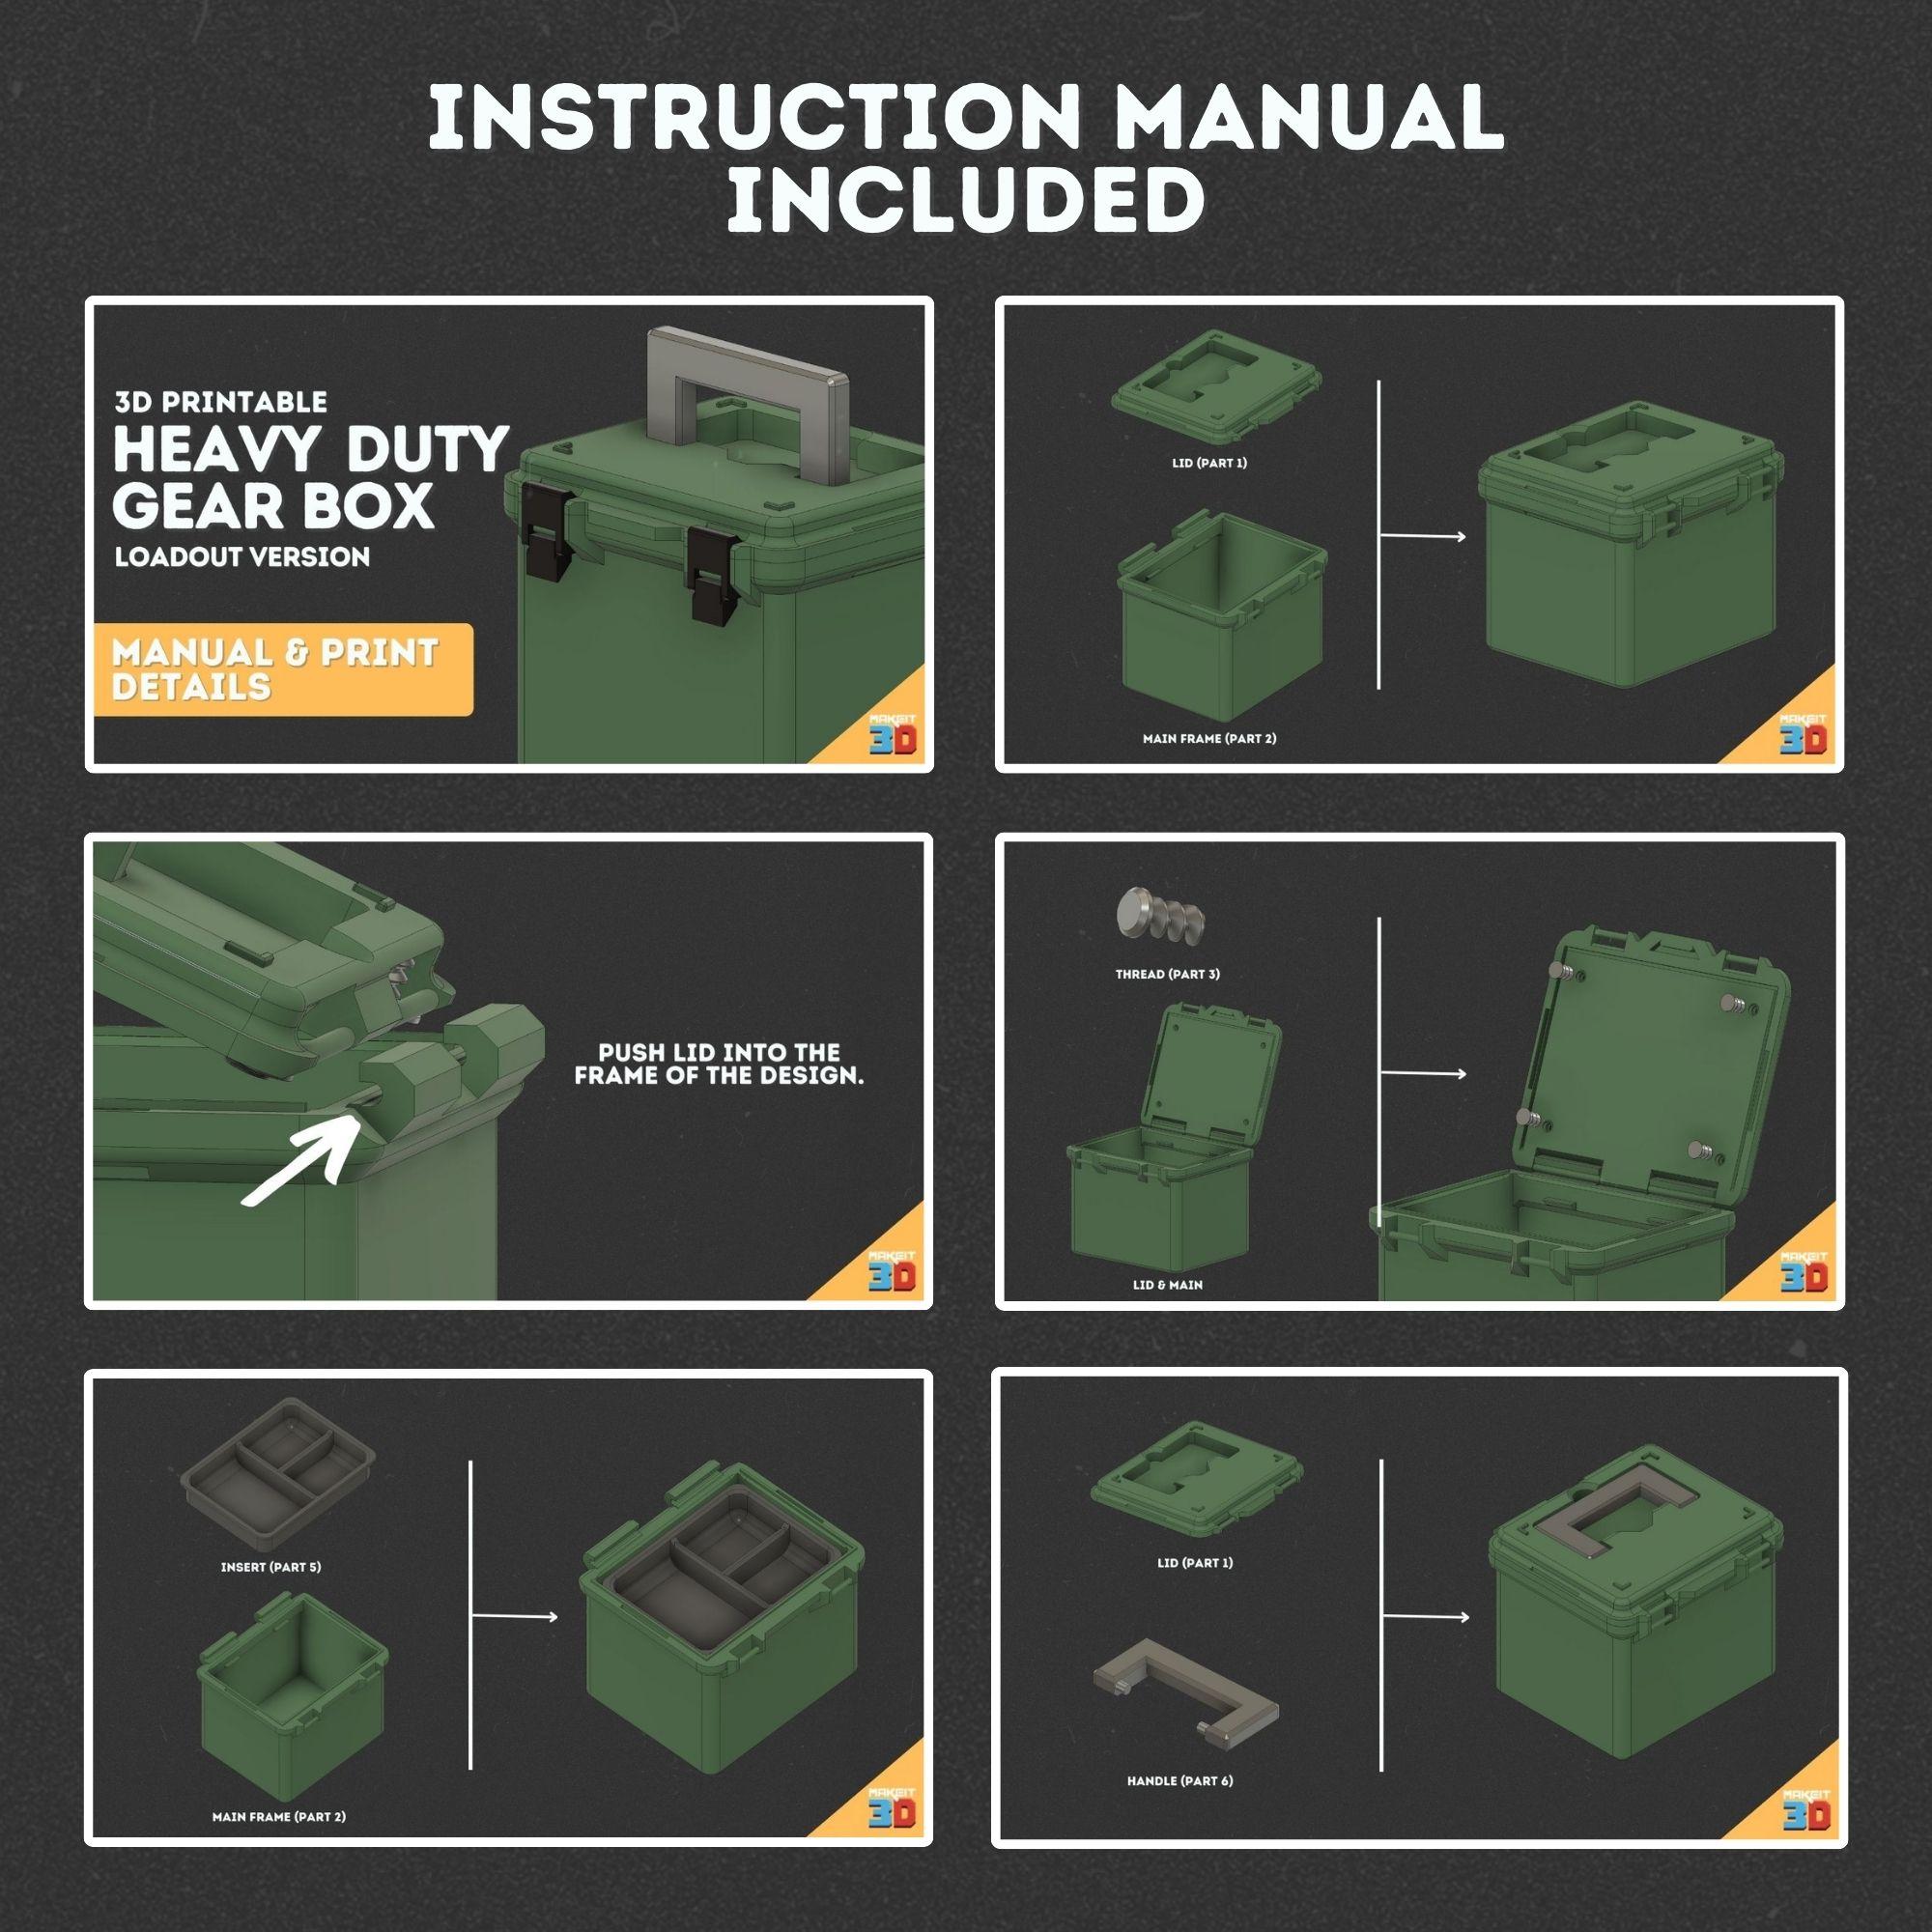 3D Printed Heavy Duty Gear Box Loadout Version 3d model